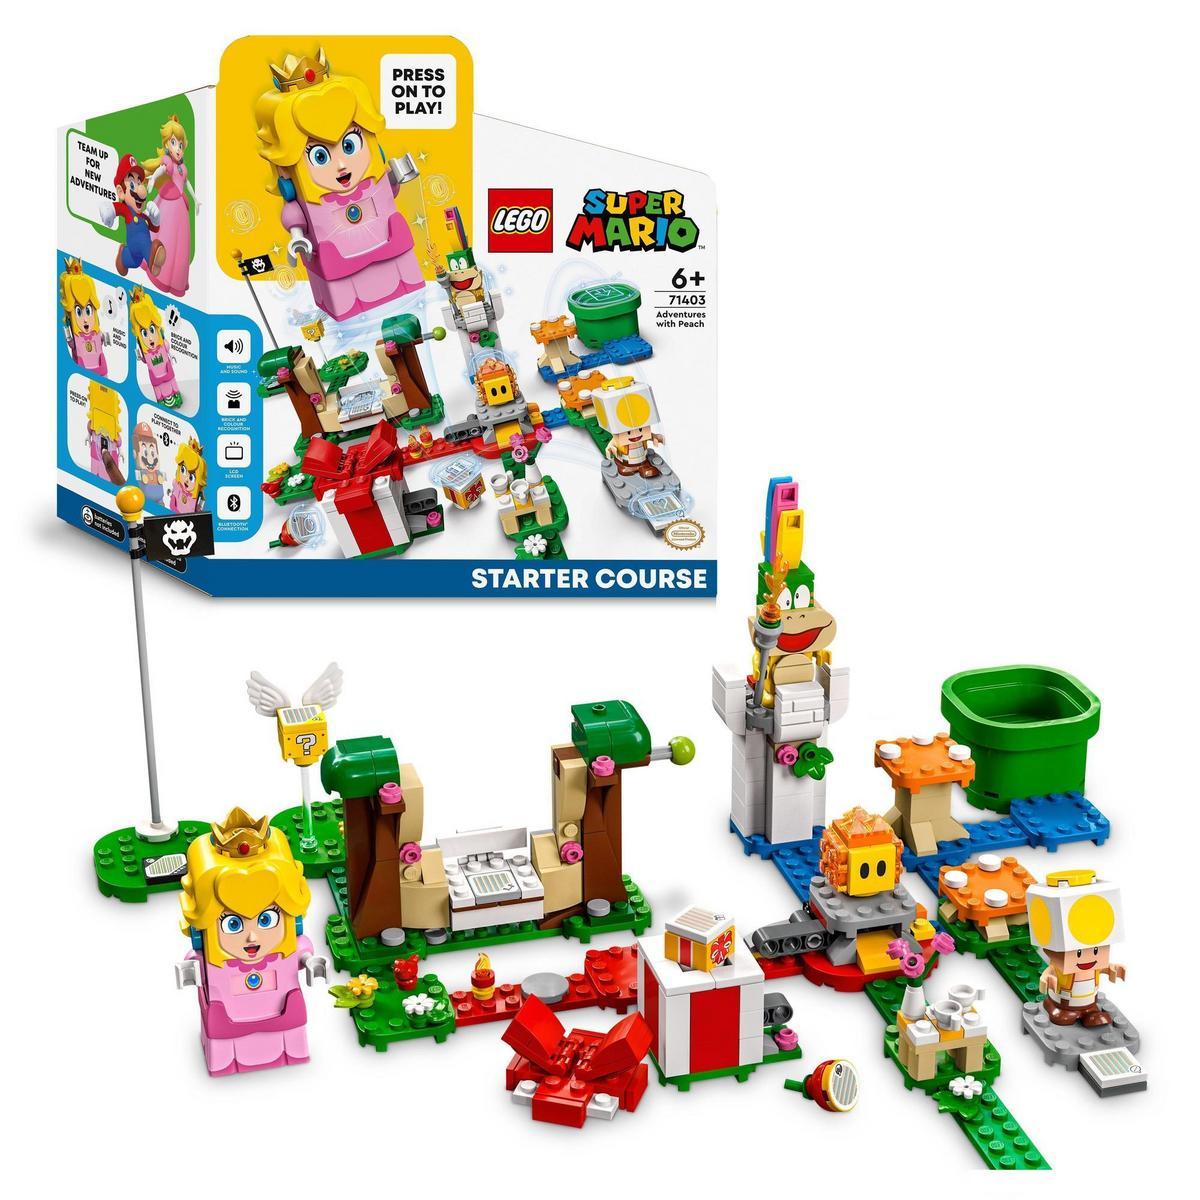 LEGO - Kit de construcción LEGO® Super Mario™ 71403 Pack Inicial: Aventuras con Peach; set de juguetes para niños a partir de 6 años (354 piezas)